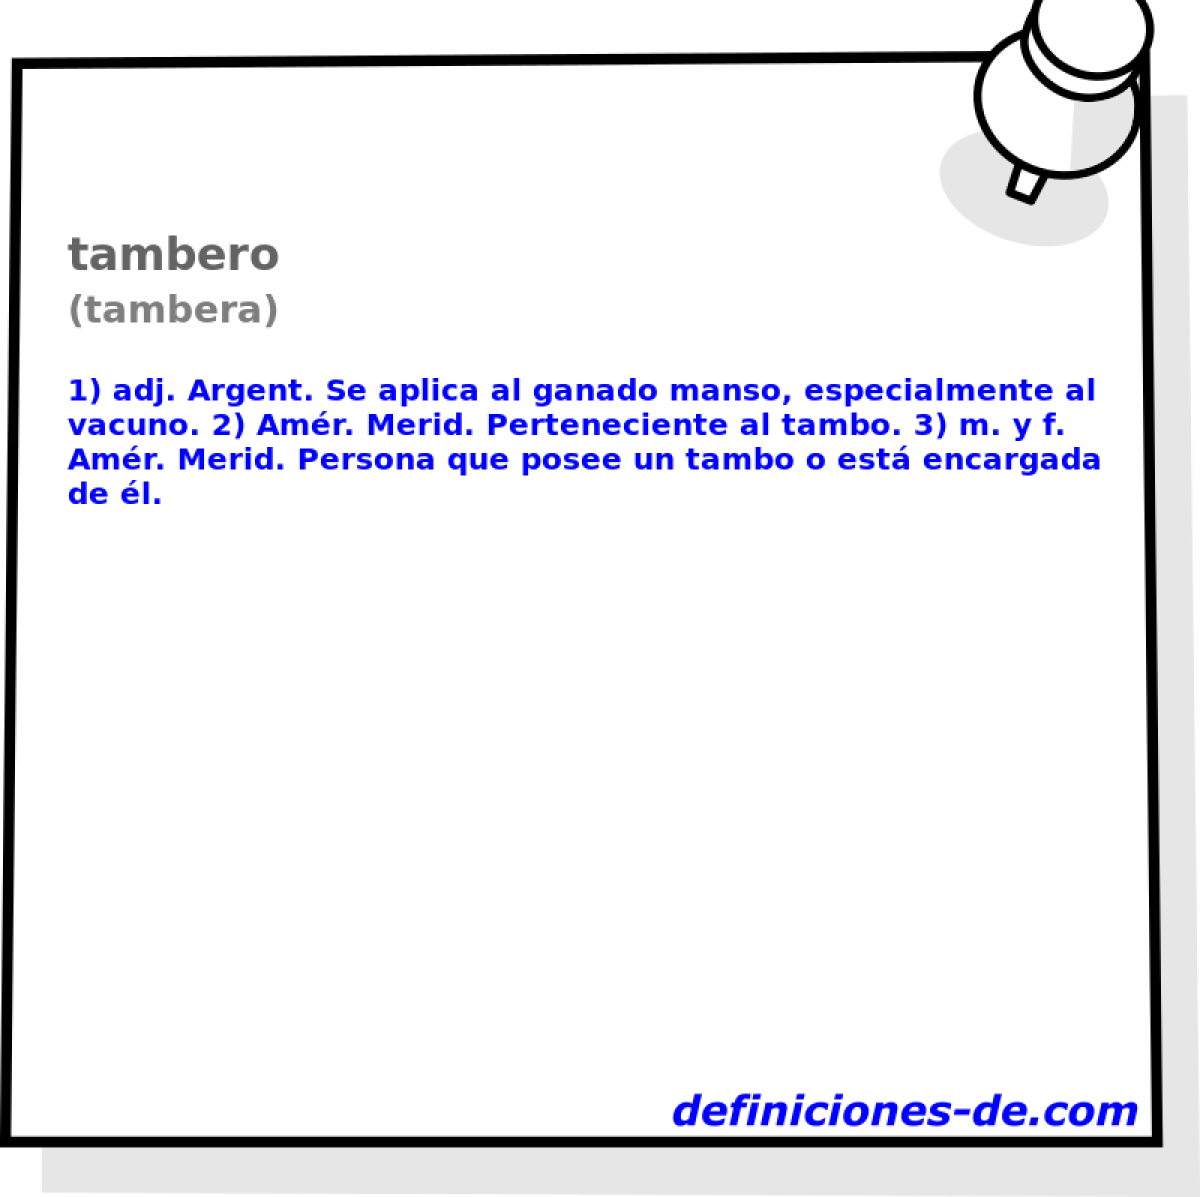 tambero (tambera)